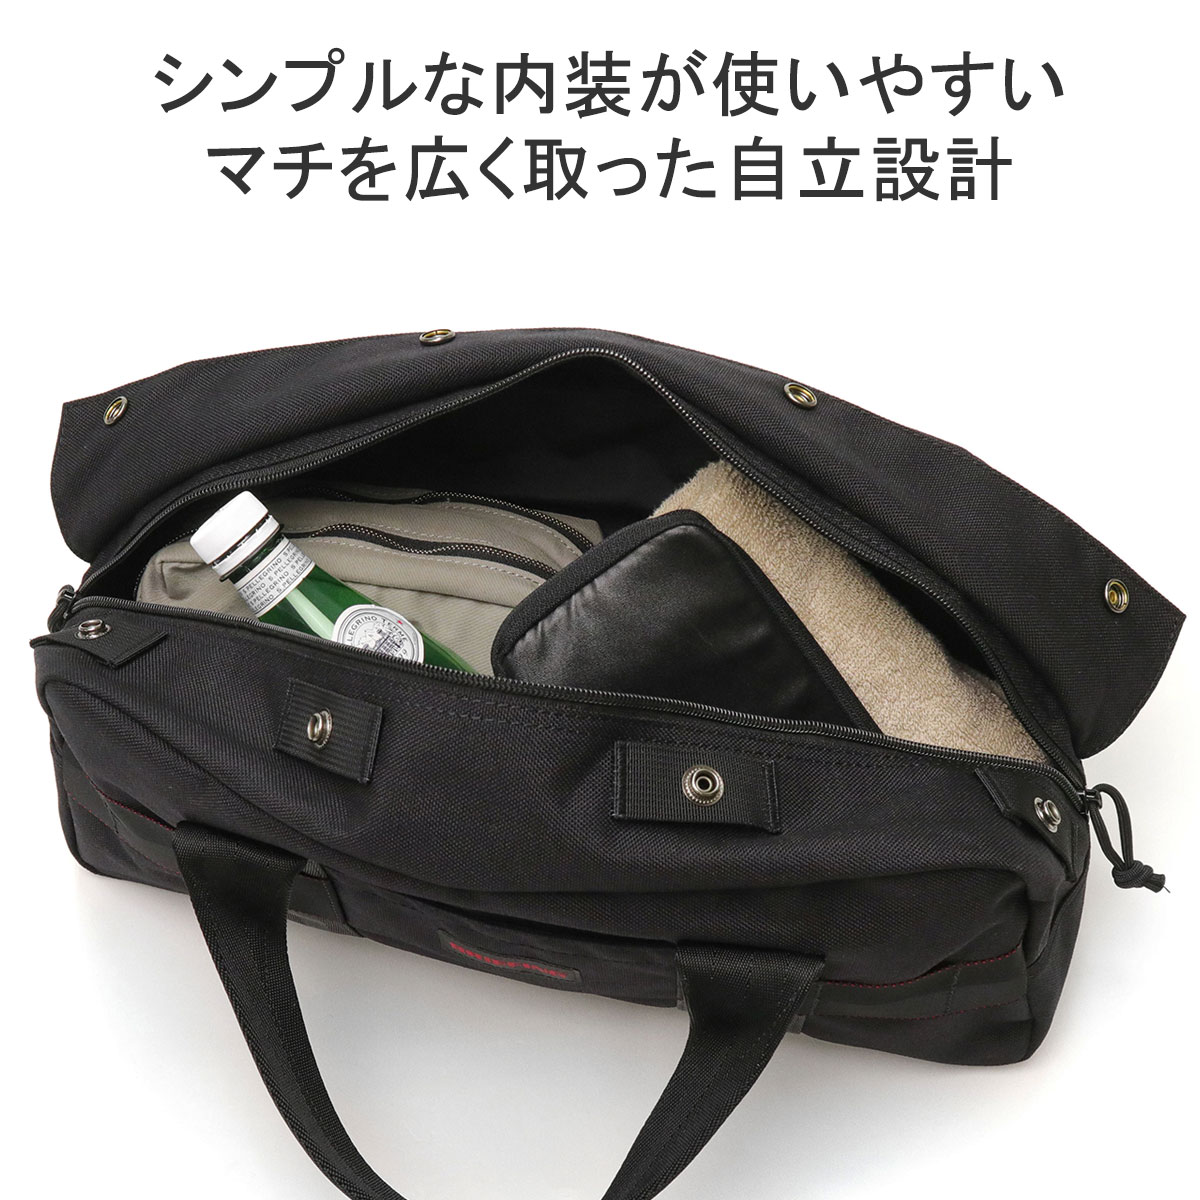 最大40%☆4/28限定 日本正規品 ブリーフィング ツールバッグ バッグ